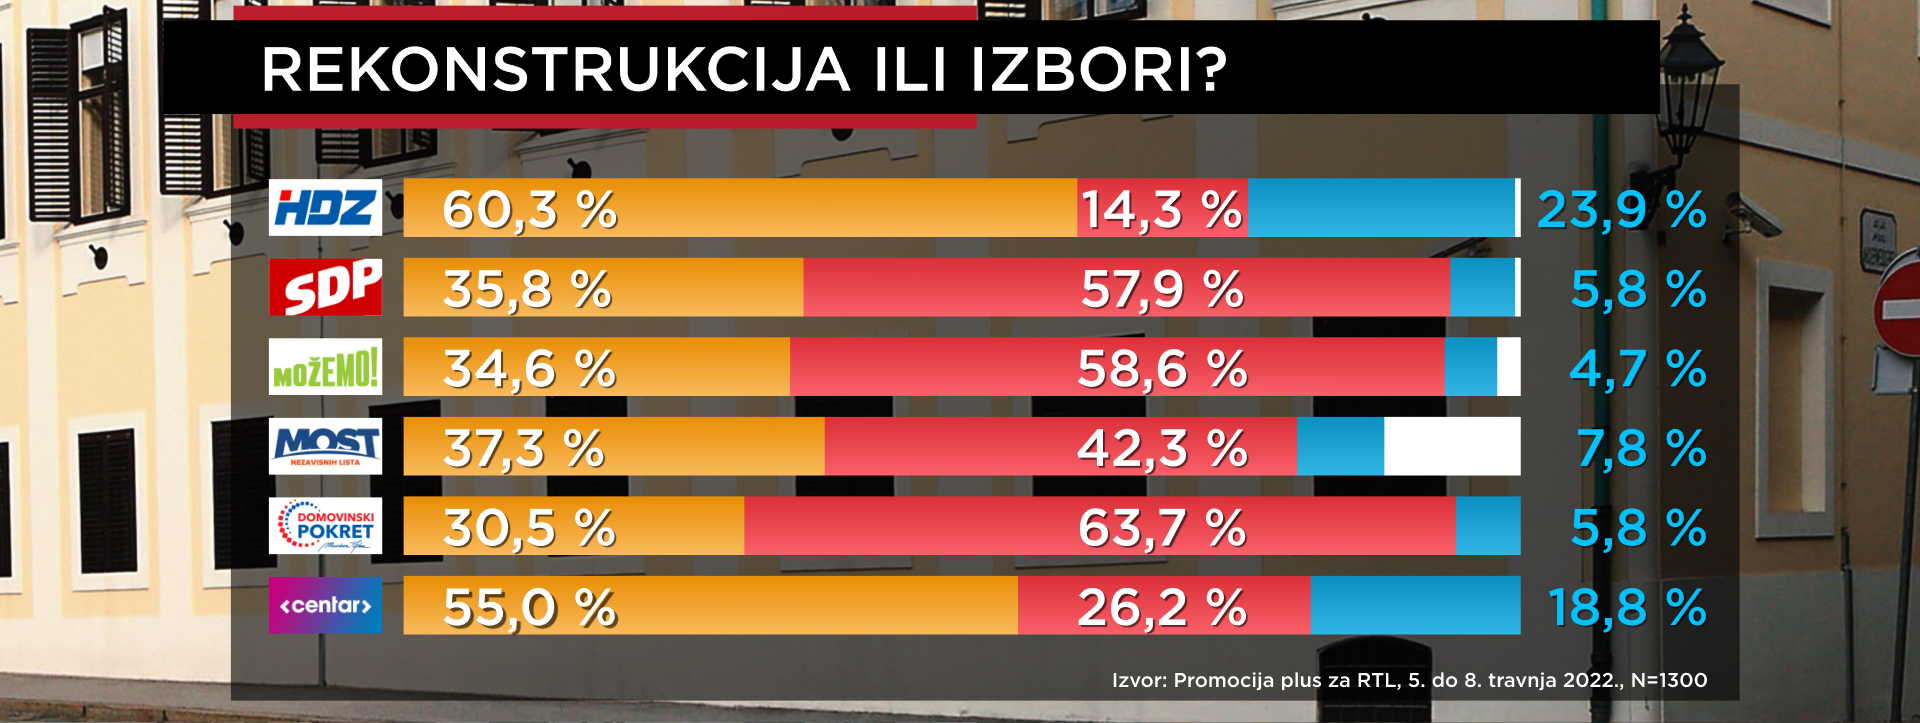 Banožić je najslabija karika čak i među biračima HDZ-a, rejting je loš i ministru Grliću Radmanu